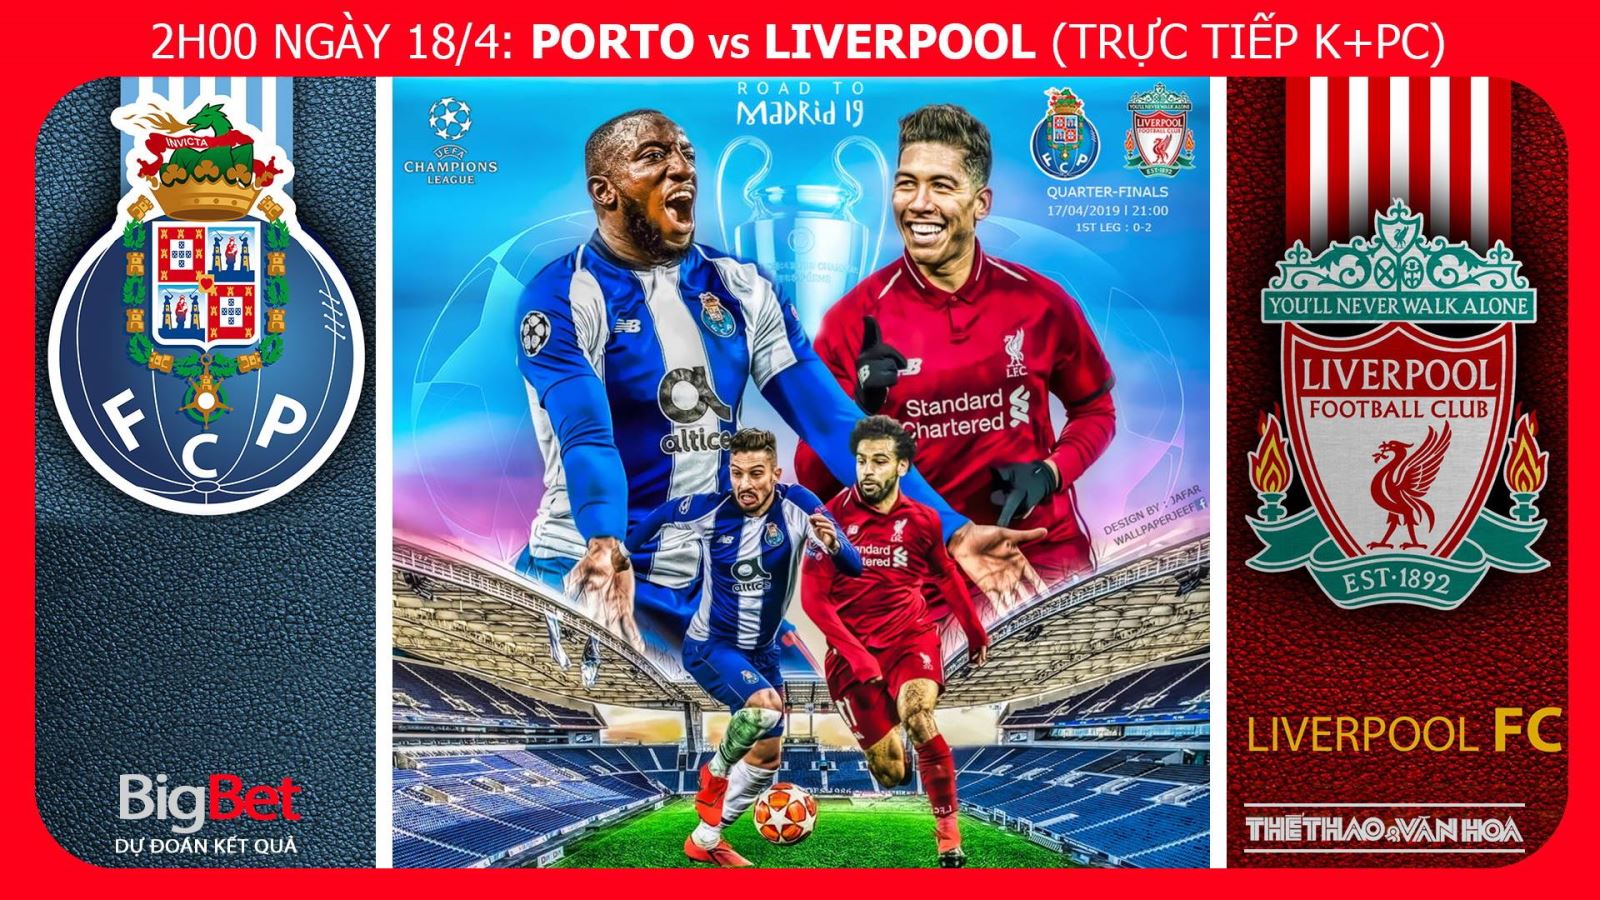 Dự đoán dự đoán bóng đá Porto vs Liverpool (2h00 ngày 18/4), lượt về tứ kết Cúp C1. Trực tiếp K+PC 